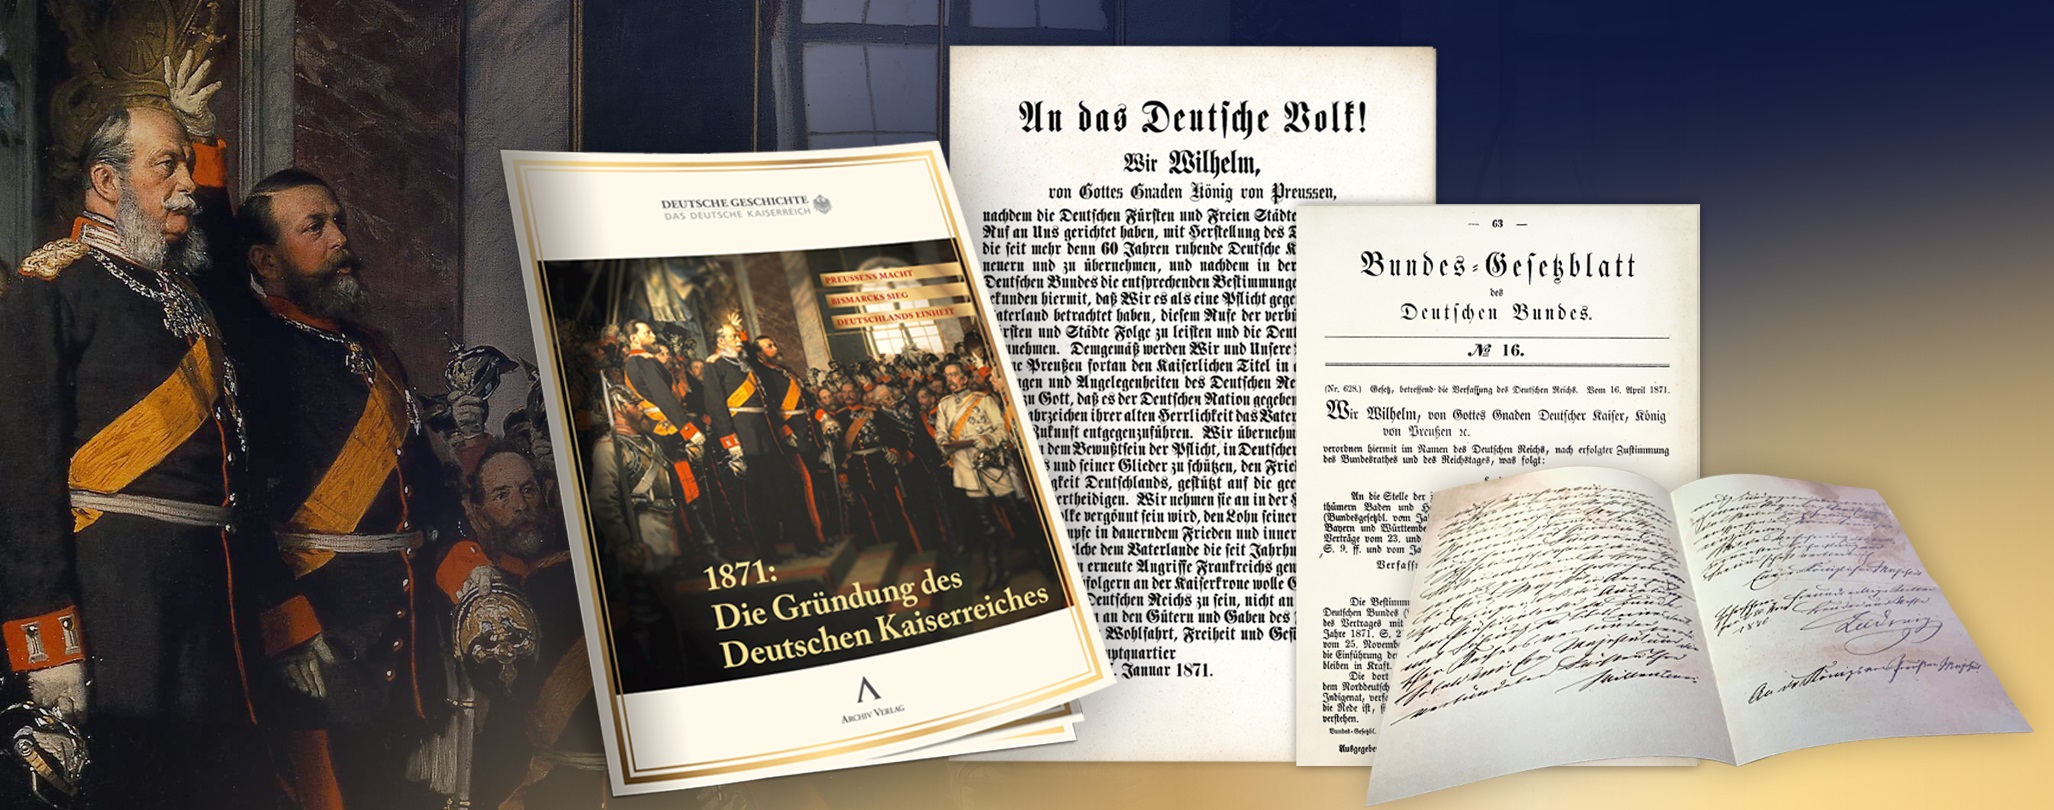 Gründung des Deutschen Kaiserreichs